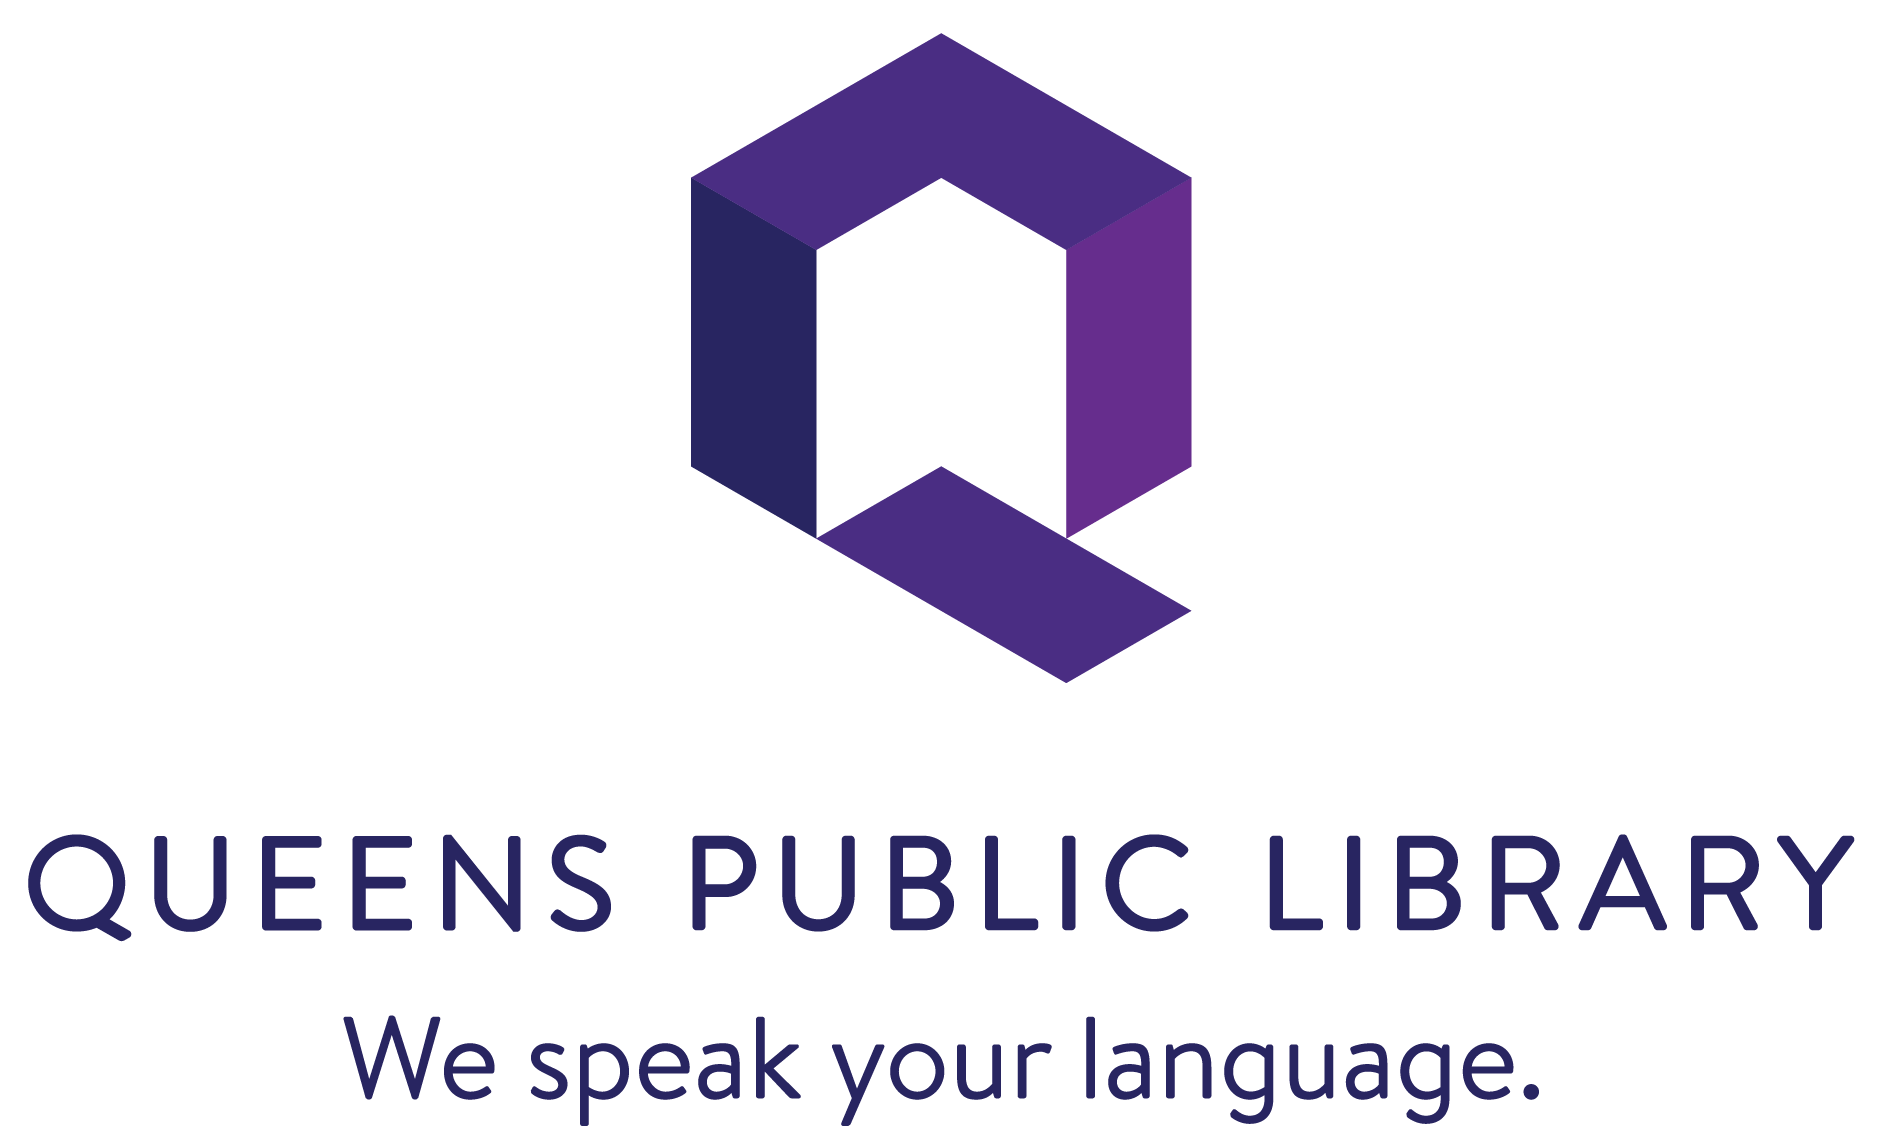 Queens Public Library Logo